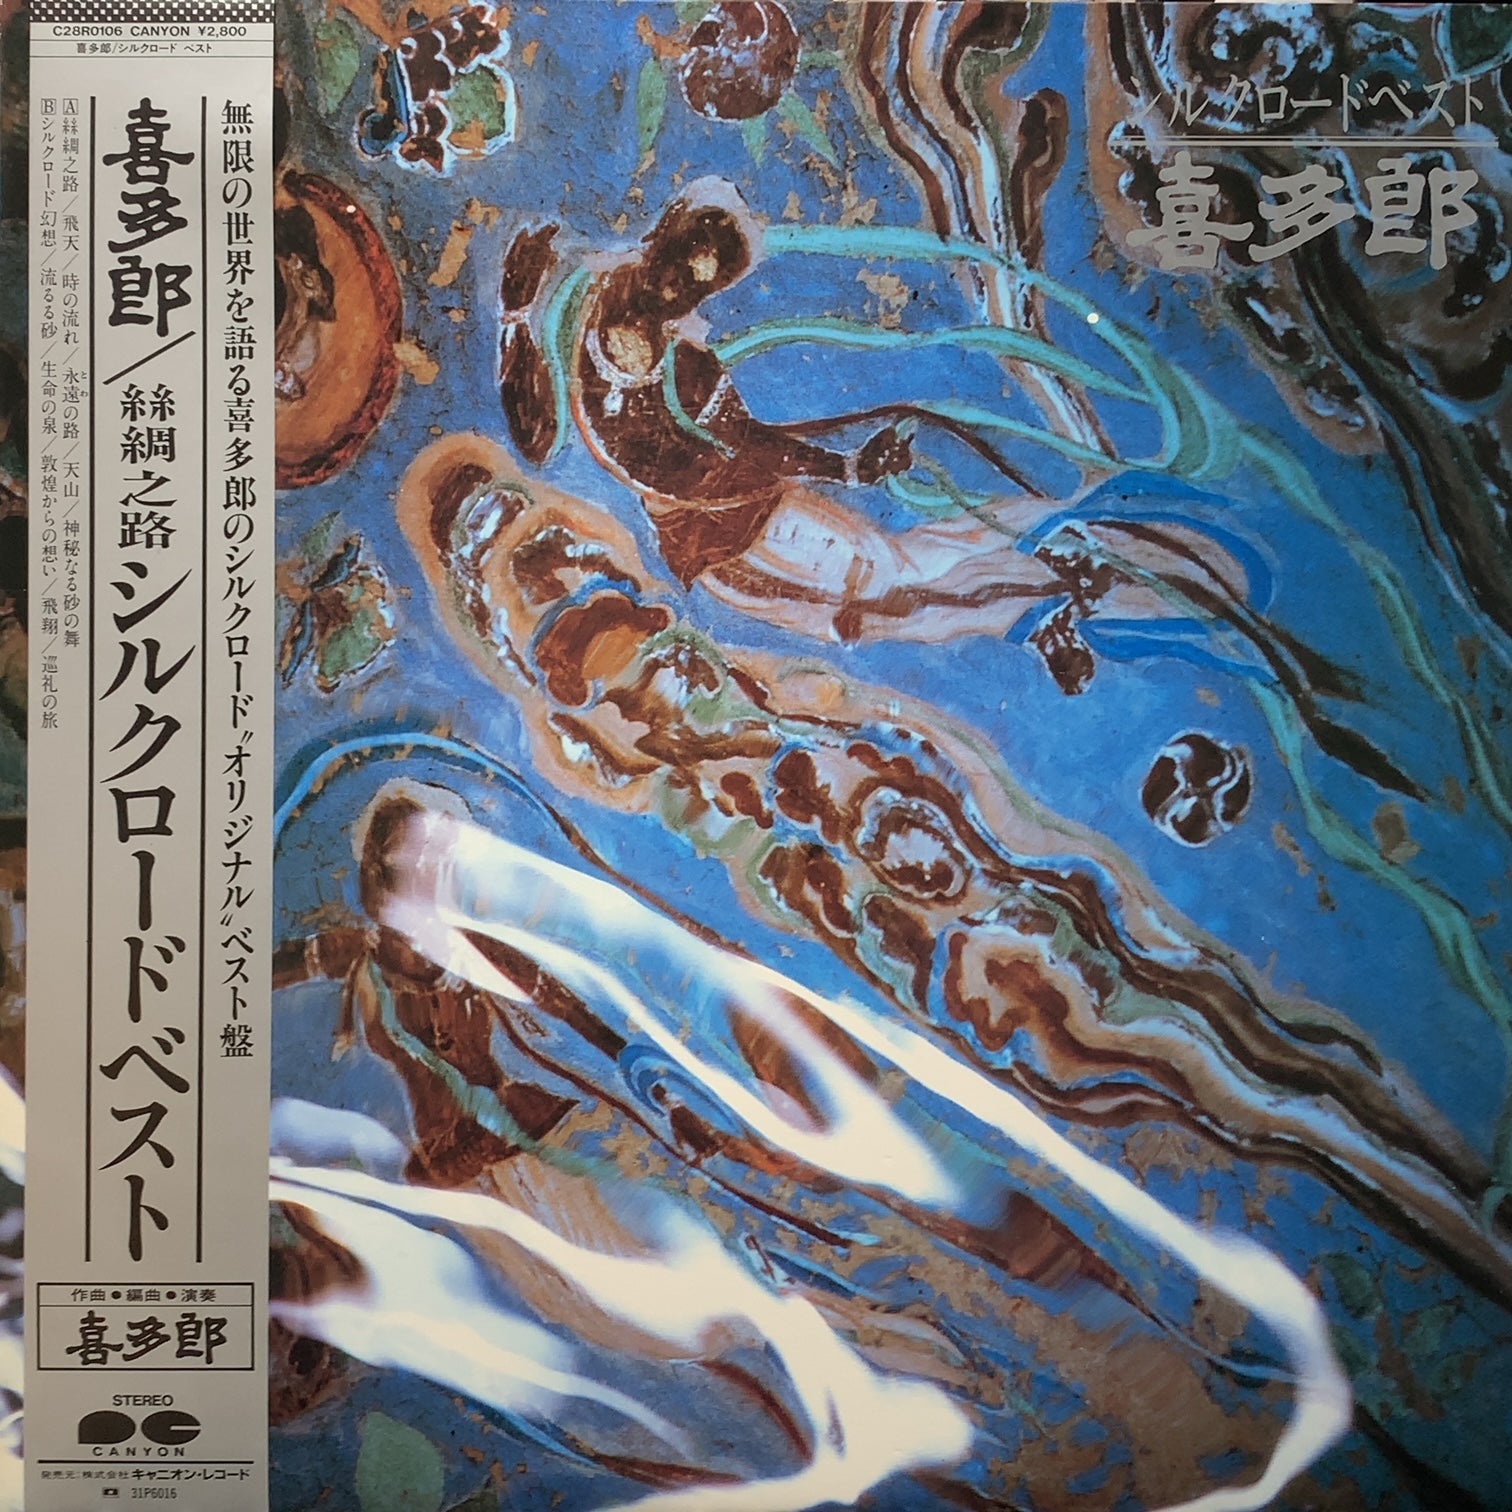 喜多郎 (Kitaro) / シルクロード ベスト (C28R0106, LP) 帯付 – TICRO 